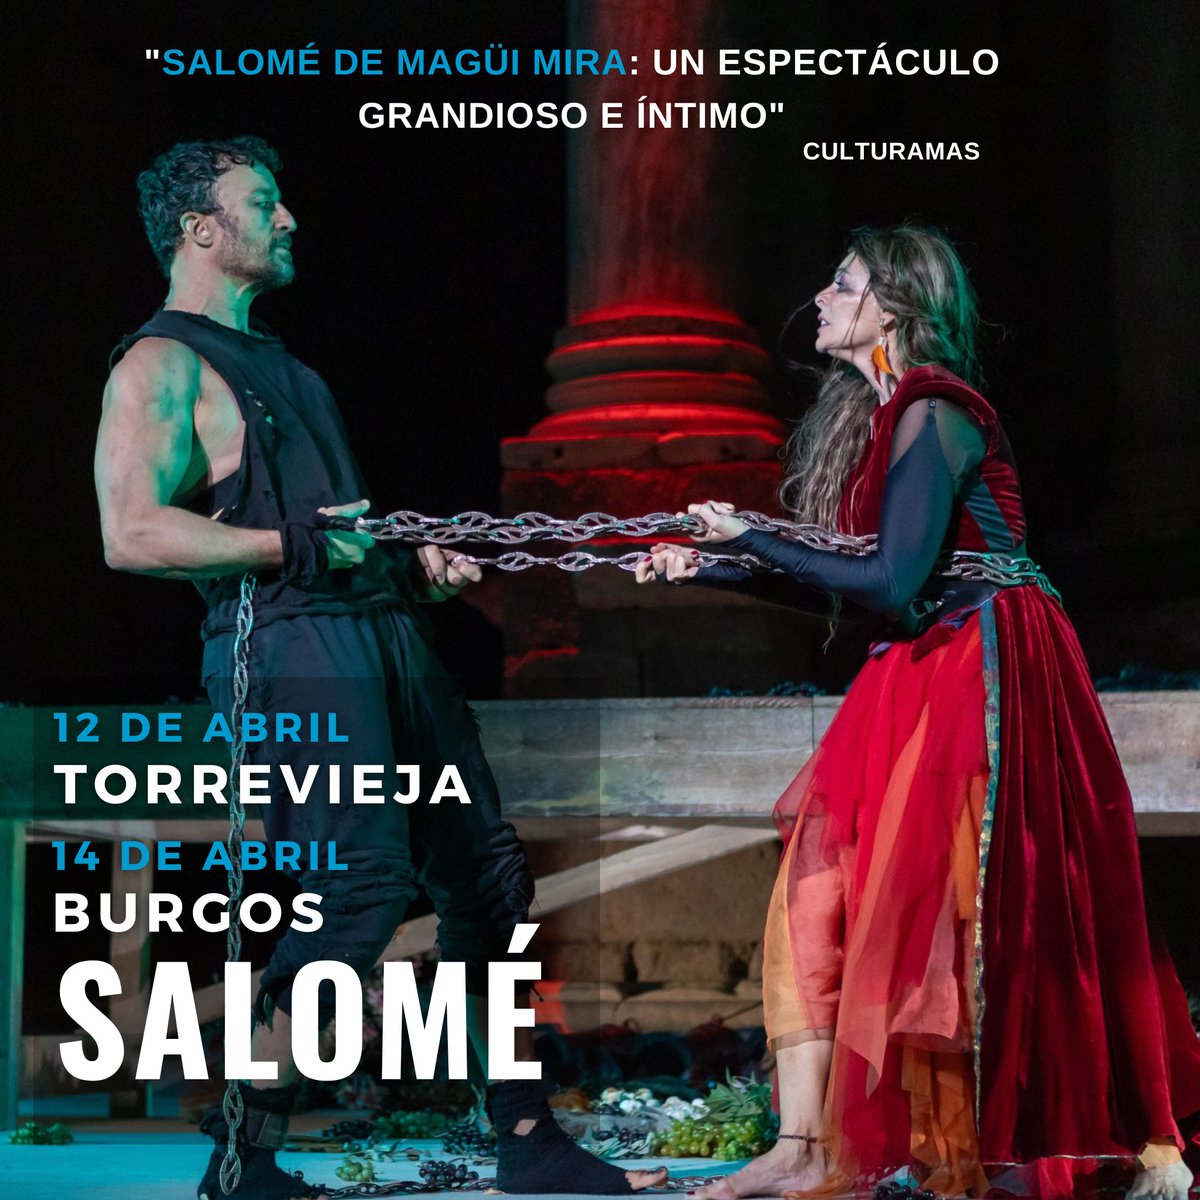 Este fin de semana, la exitosa gira de #Salomé de @maguimira podrá disfrutarse en: ⭕️ Teatro Municipal de #Torrevieja el 12 de abril 🗓️ ⭕️ Auditorio Fórum de #Burgos el 14 de abril 🗓️ Con #BelénRueda, @PabloPuyol_ @sergiomurlopez #LuisaMartín o #JuanFernández entre otros 🔥